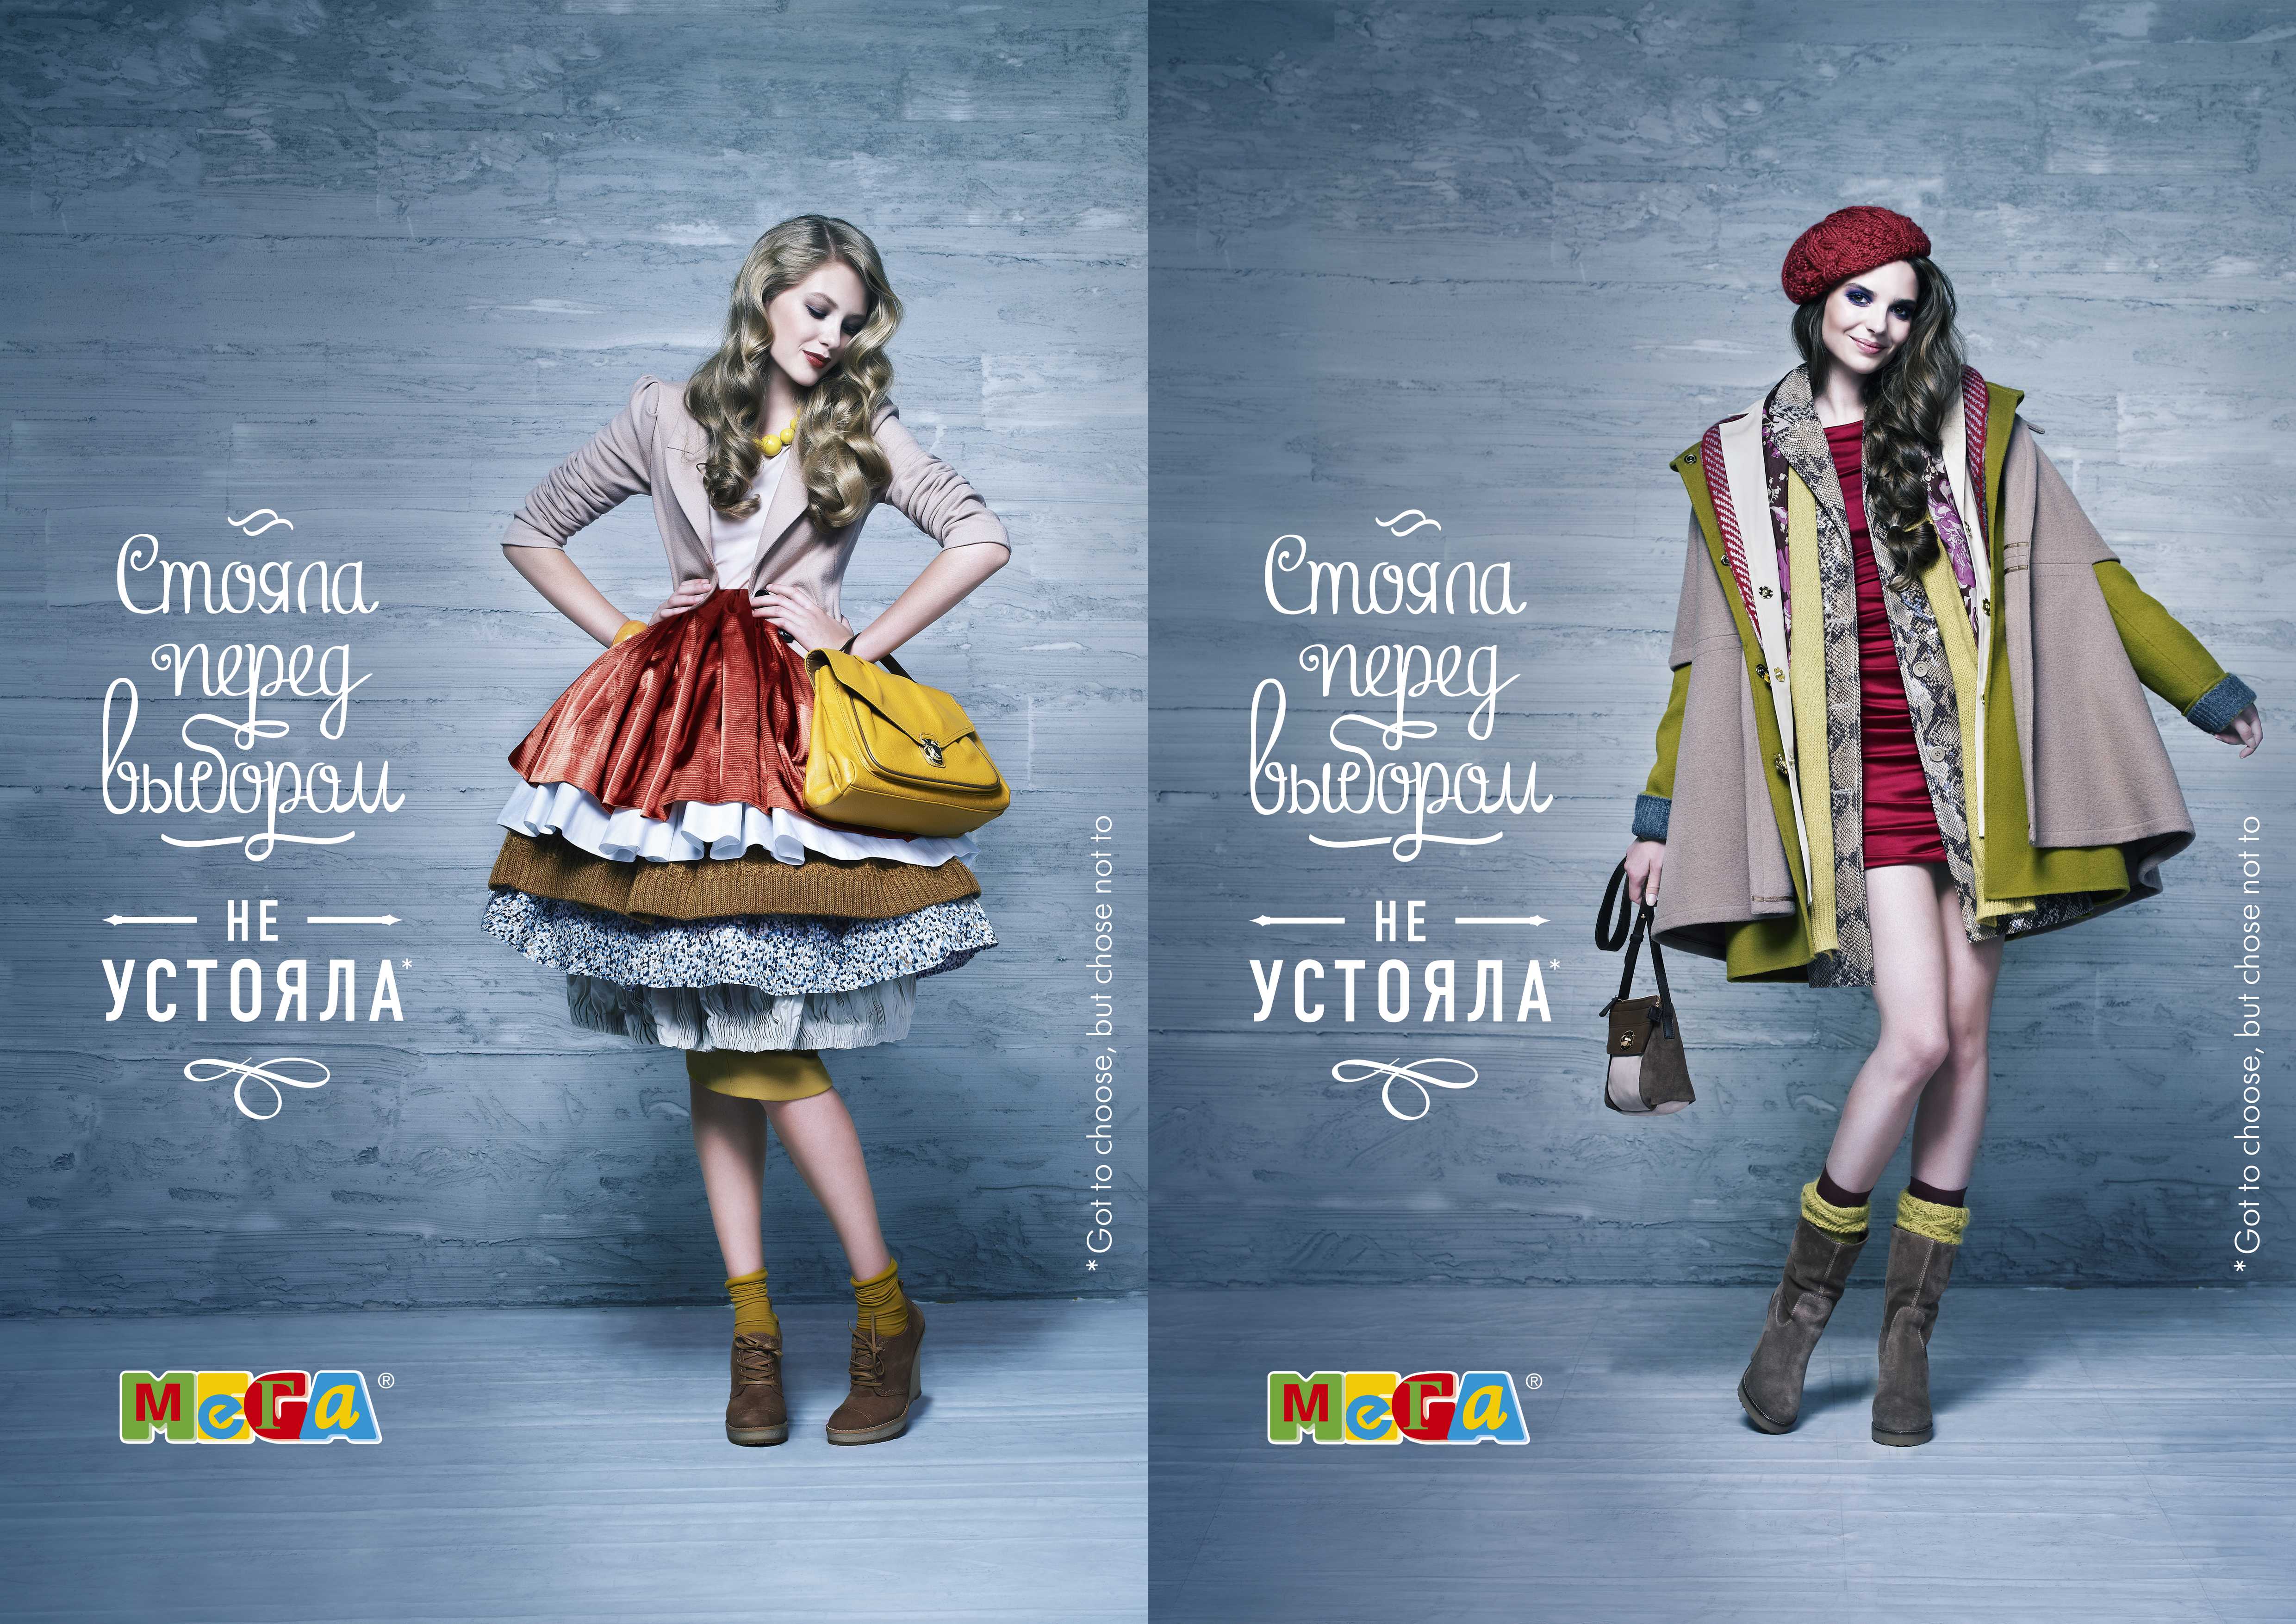 Женские слоганы. Креативная реклама женской одежды. Рекламный плакат одежды. Рекламный плакат женской одежды. Креативная реклама магазина одежды.